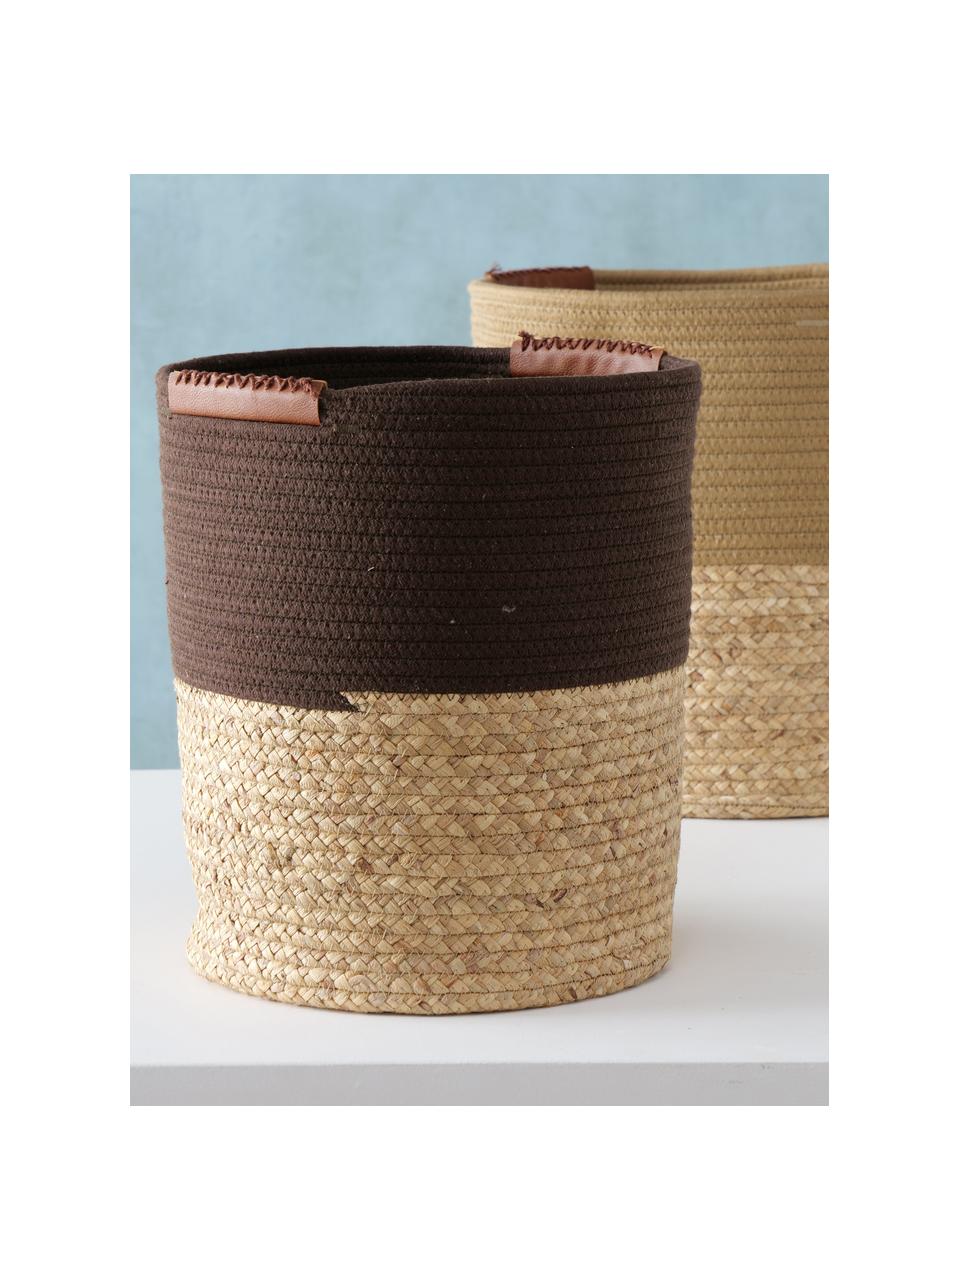 Set de cestas artesanales Zahara, 2 uds., Asas: cuero sintético, Marrón, Set de diferentes tamaños